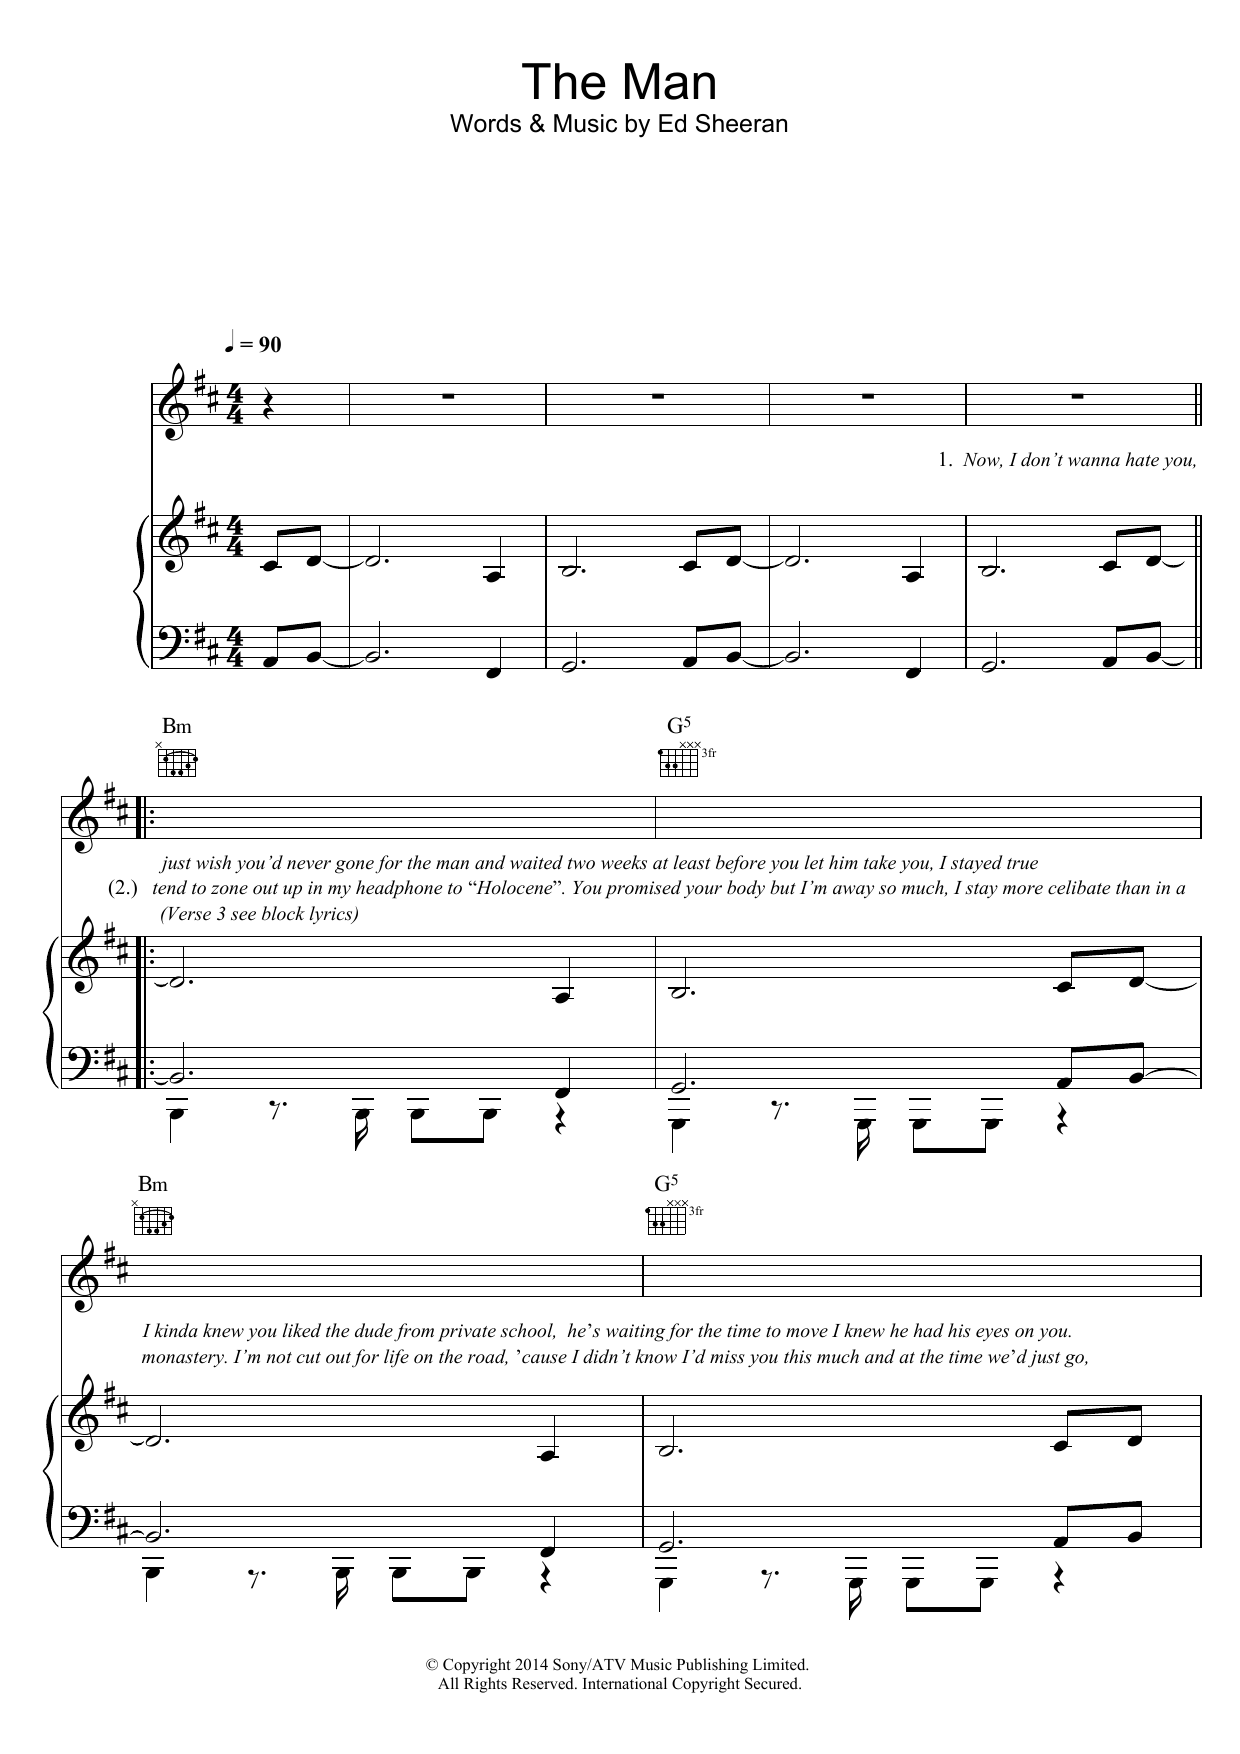 Ed Sheeran The Man Sheet Music Notes & Chords for Ukulele - Download or Print PDF